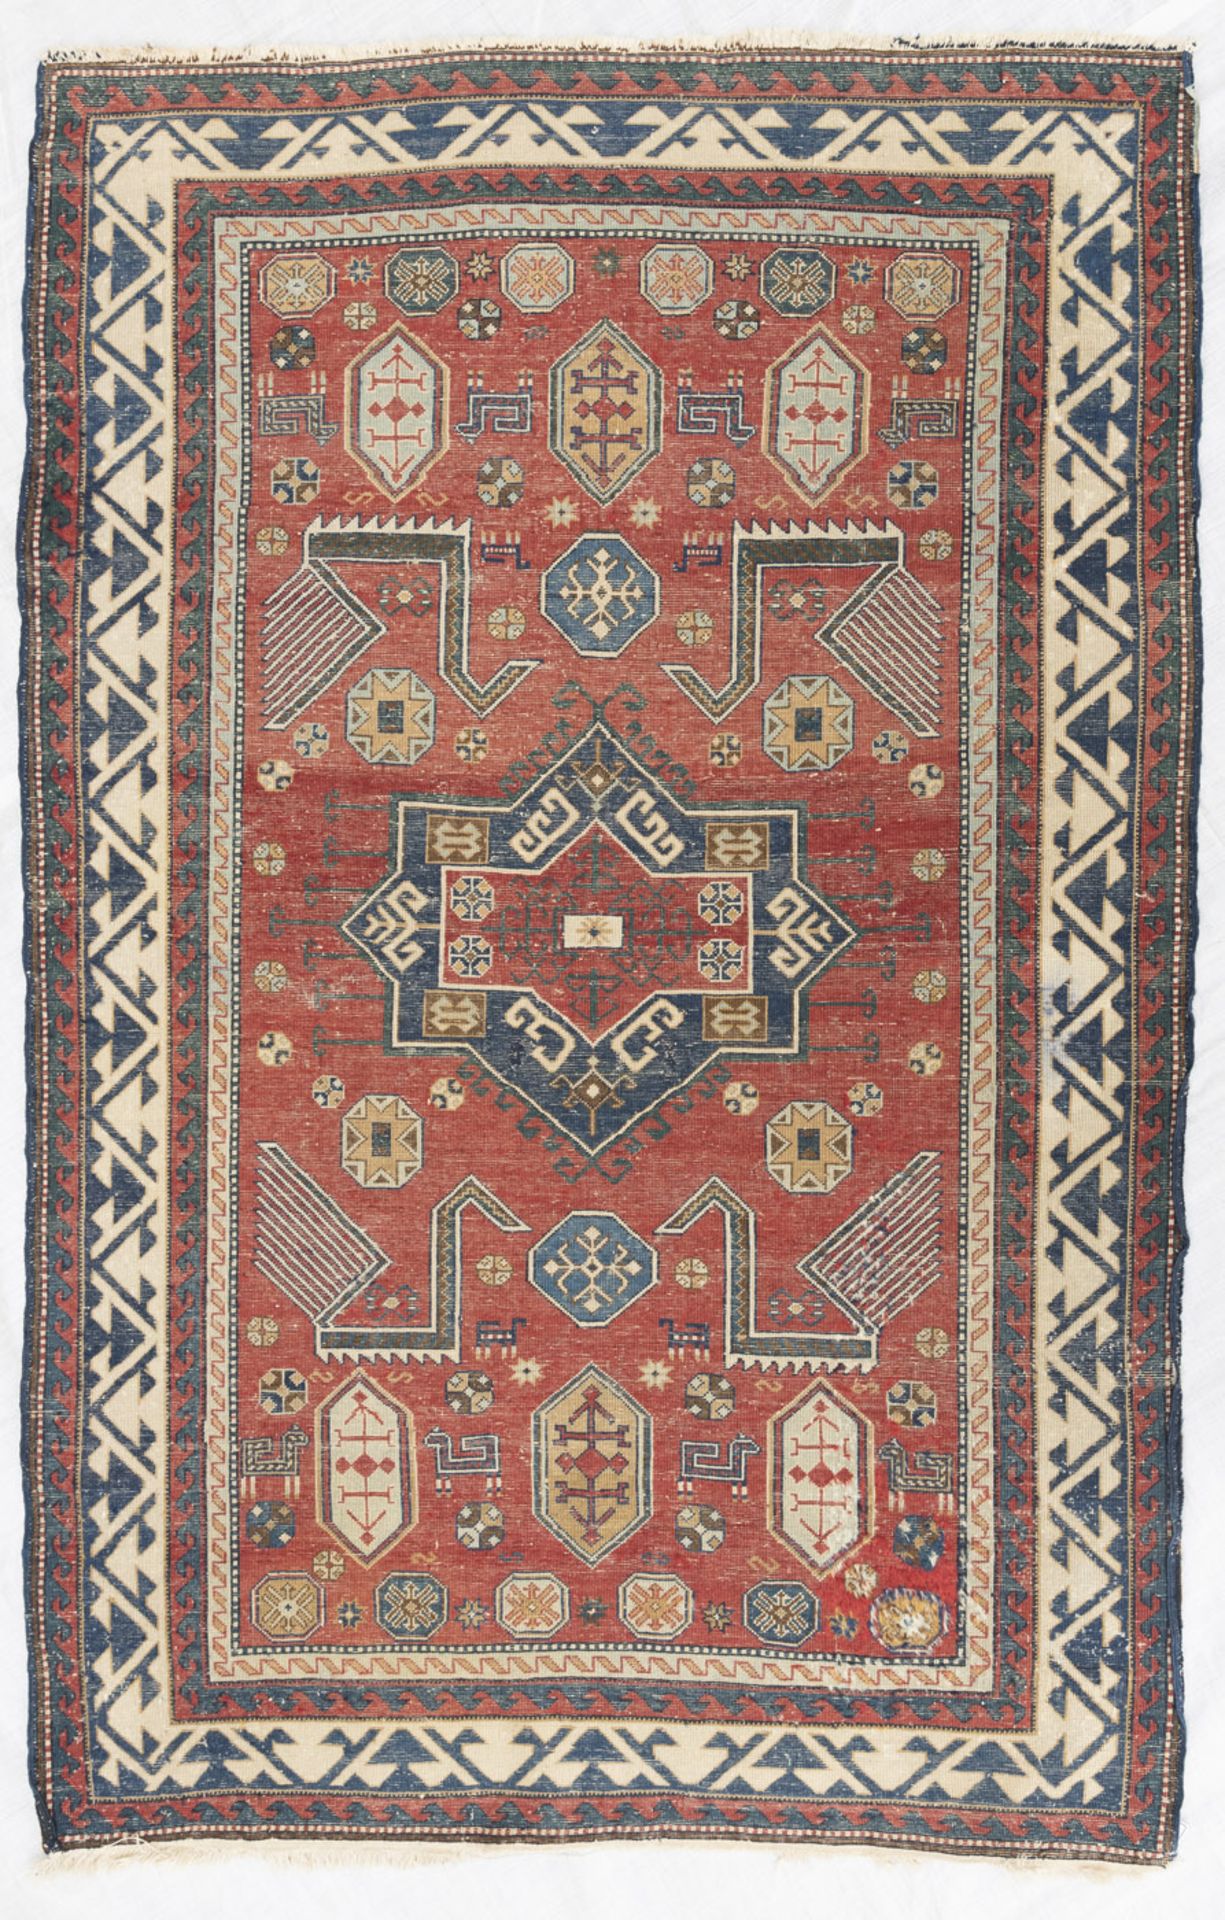 Alter Teppich mit Fakhralo-Musterung - Bild 6 aus 6